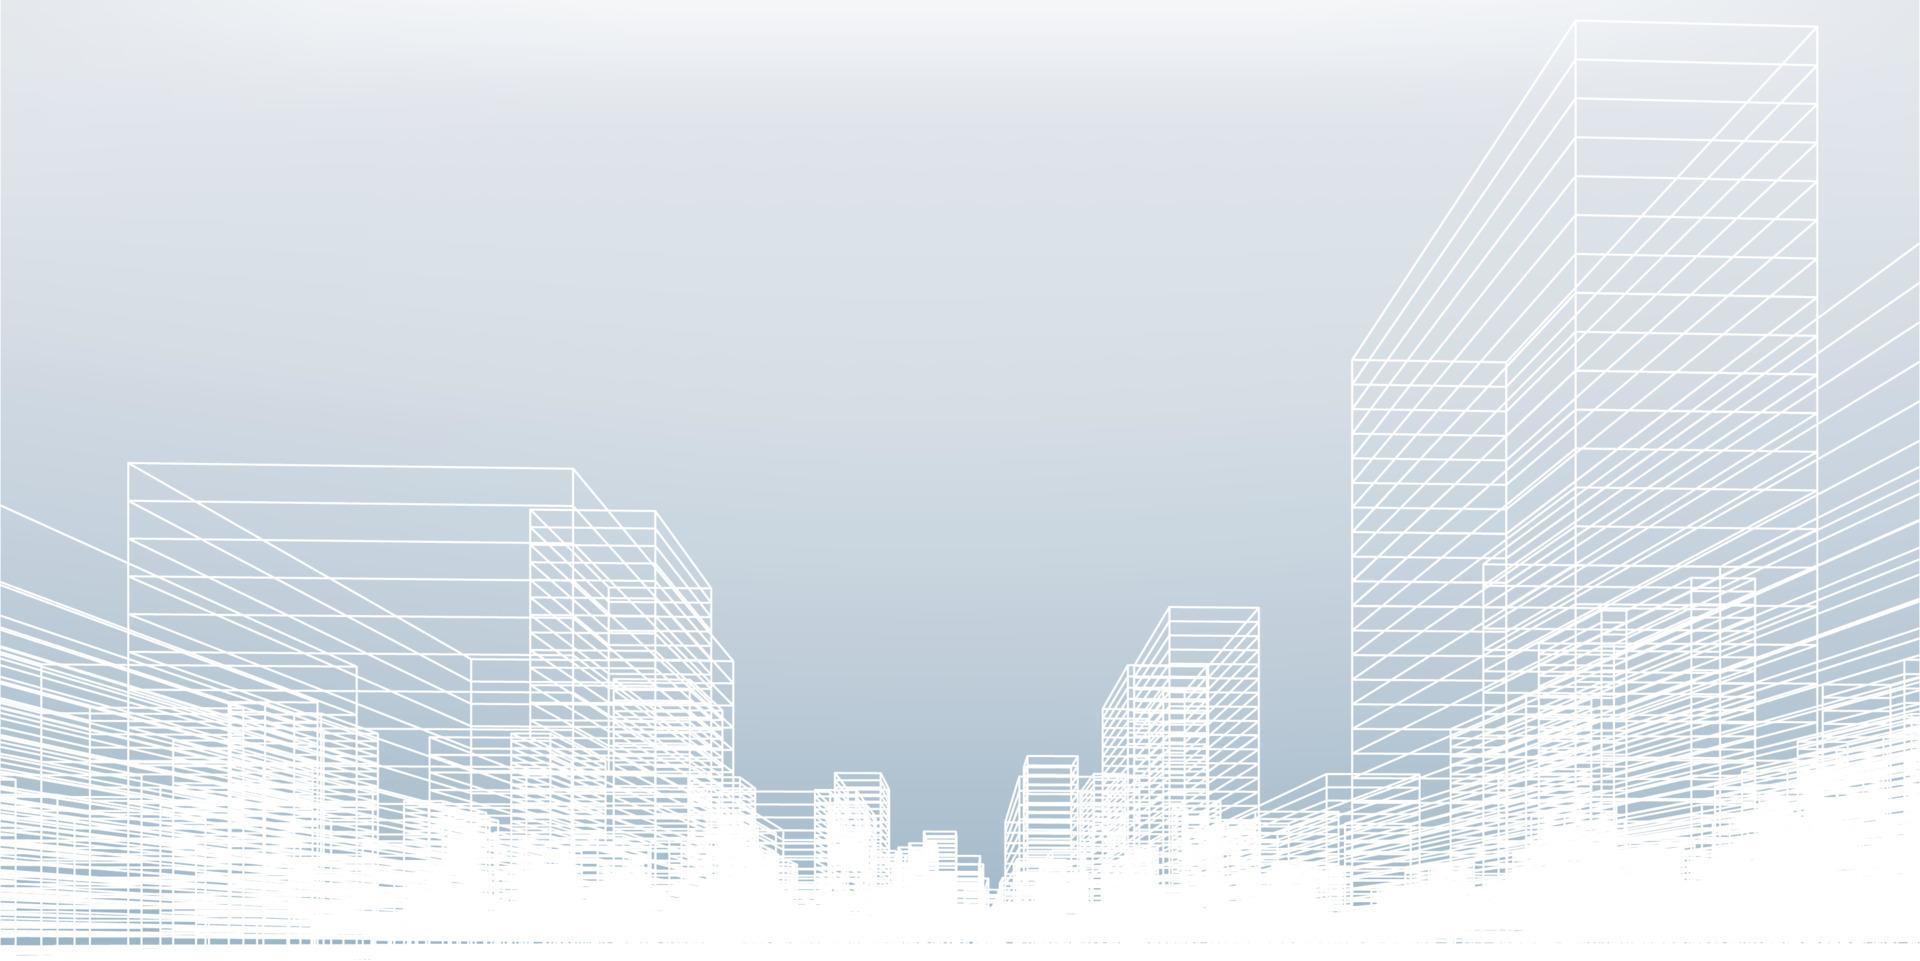 renderizado 3d de perspectiva de construcción de estructura metálica. fondo de la ciudad de estructura alámbrica vectorial del edificio. vector